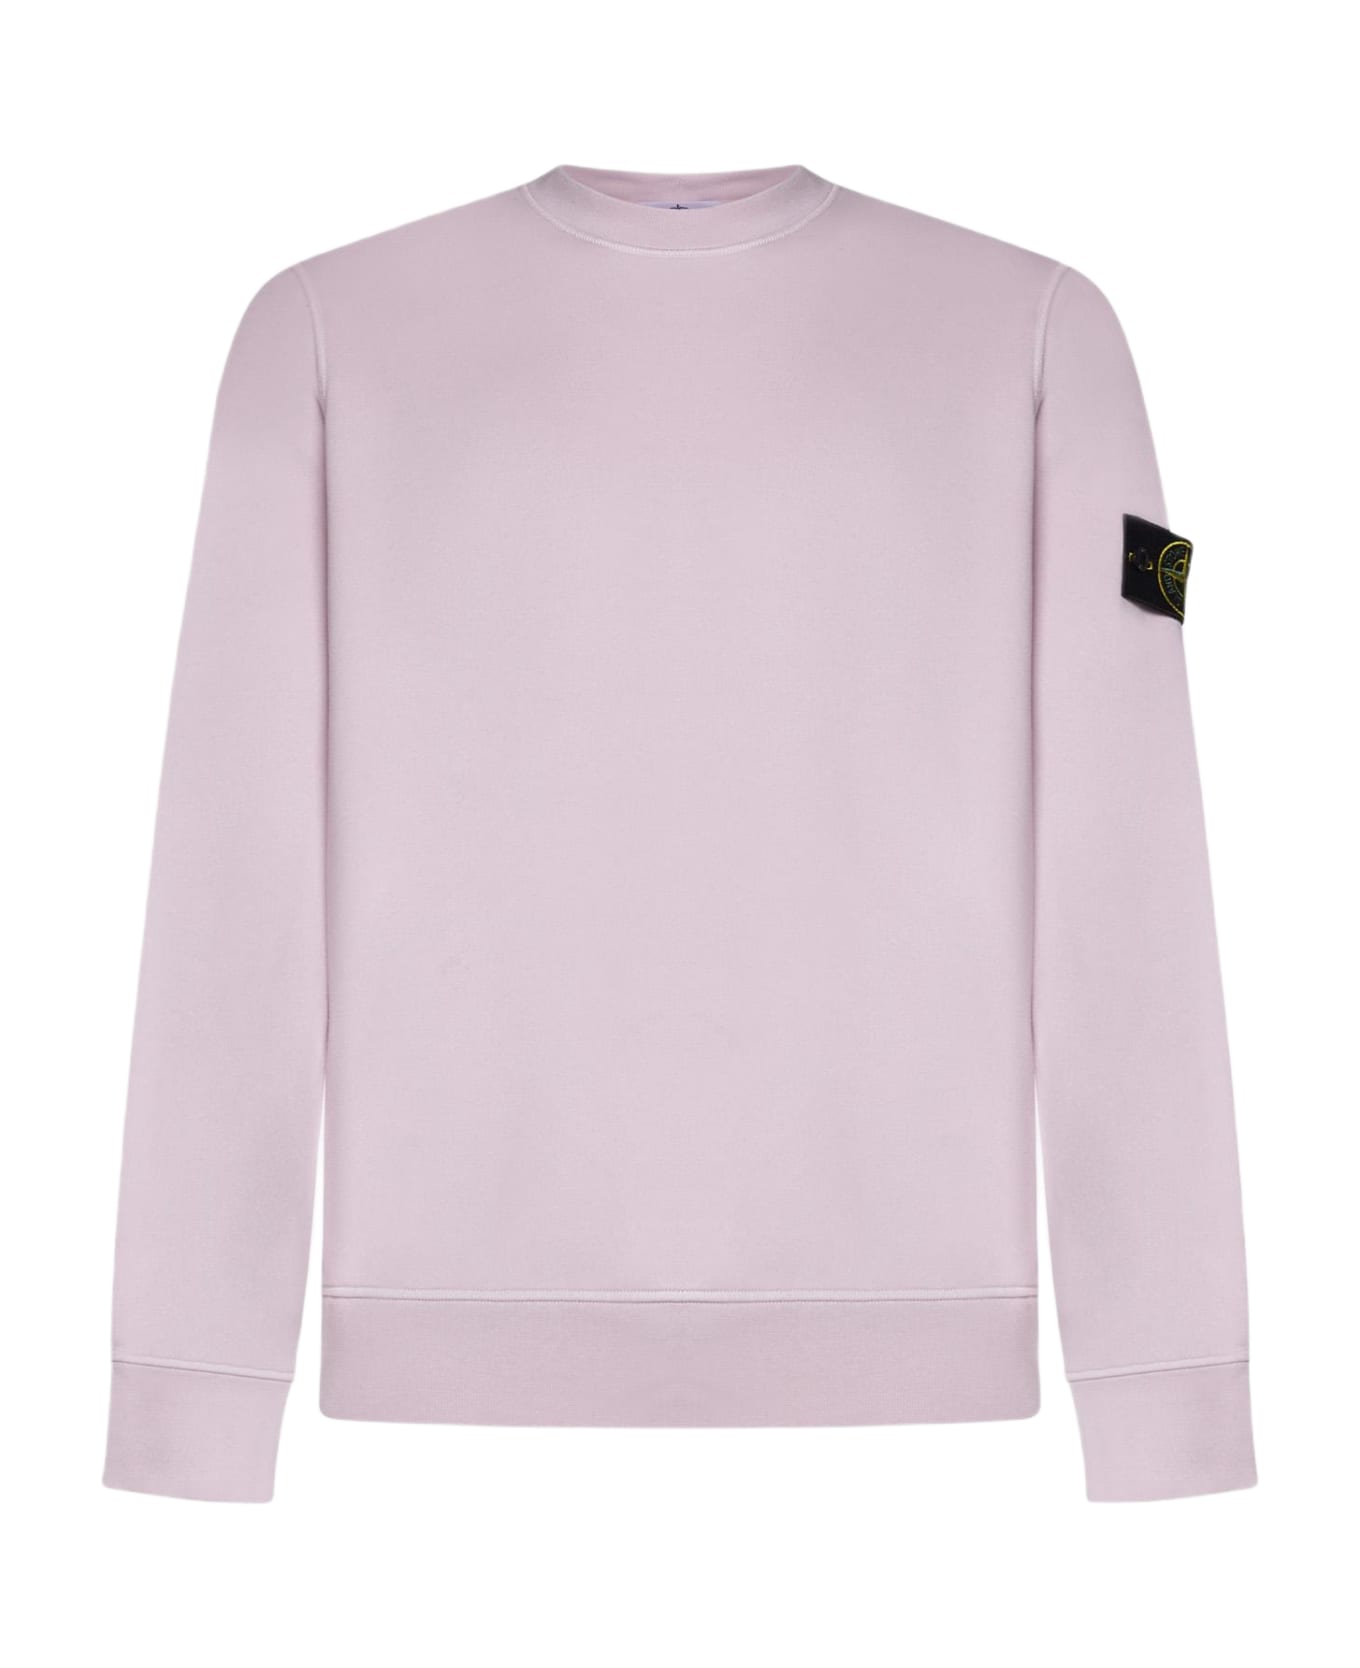 Stone Island Cotton Sweatshirt Fleece - PINK フリース